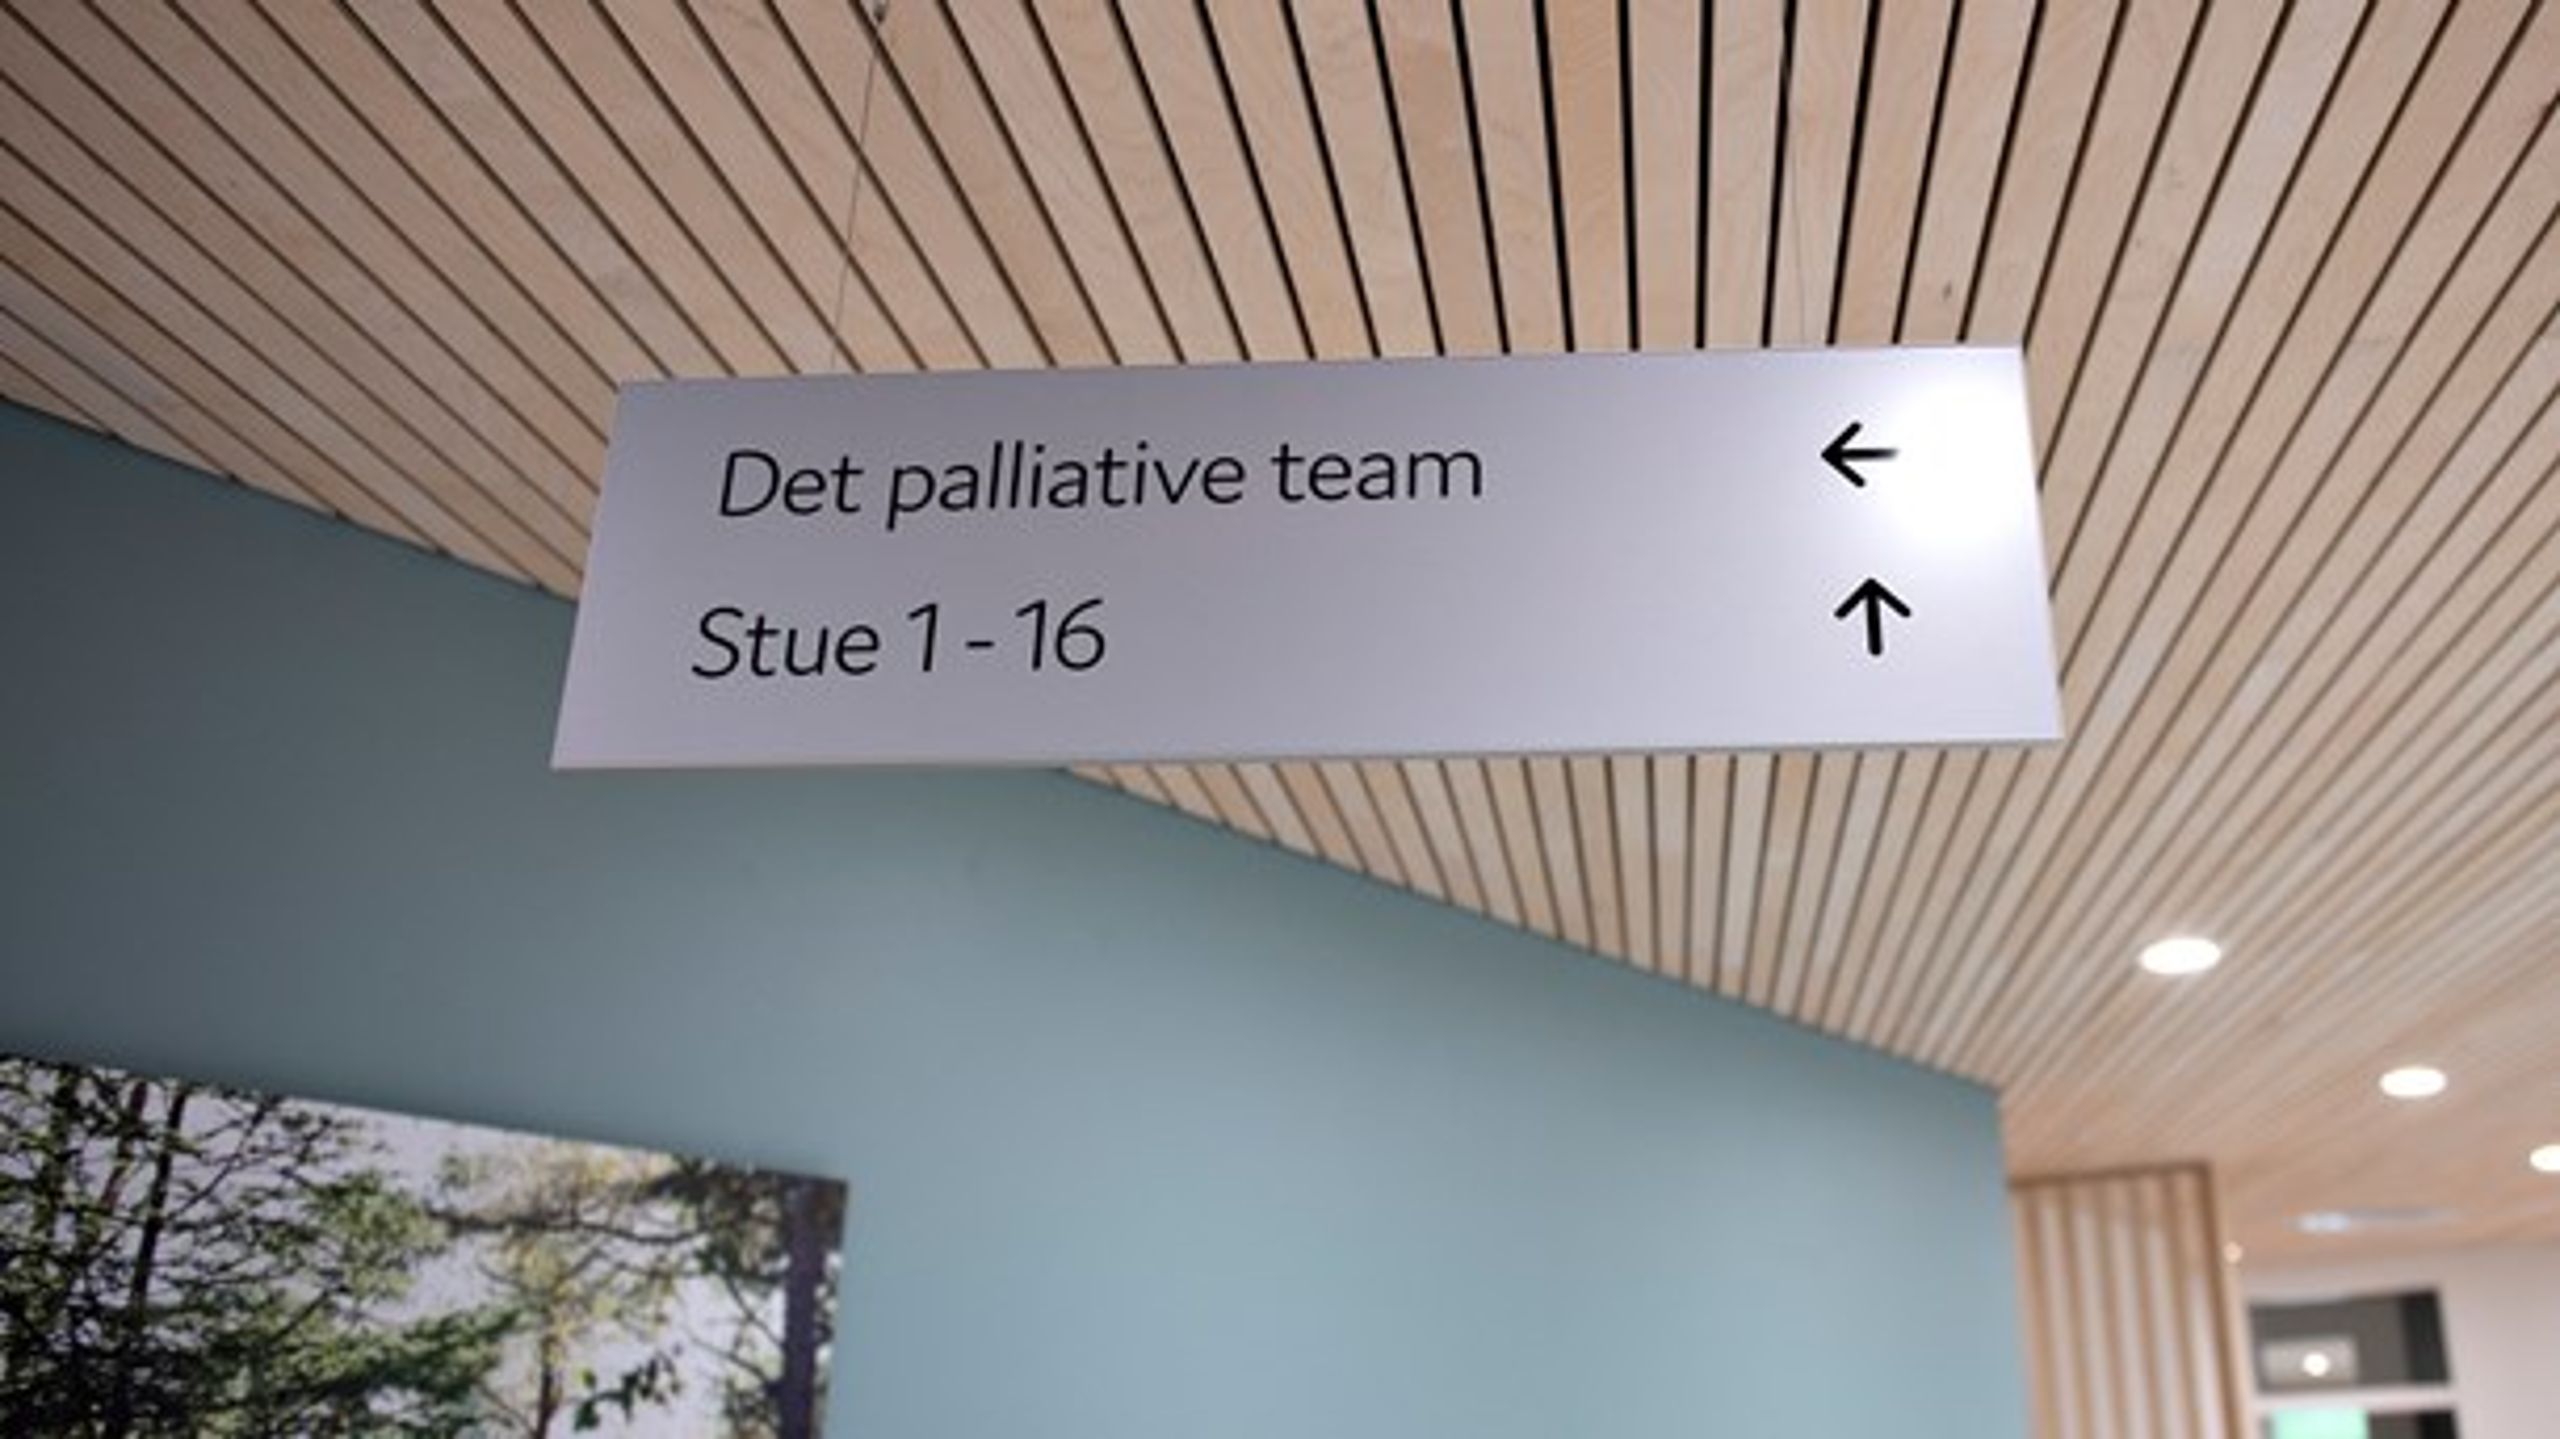 Palliation skal i fremtiden fylde mere i alle dele af sundhedsvæsenet, der behandler svækkede ældre eller terminalt syge patienter, mener Danske Regioner.